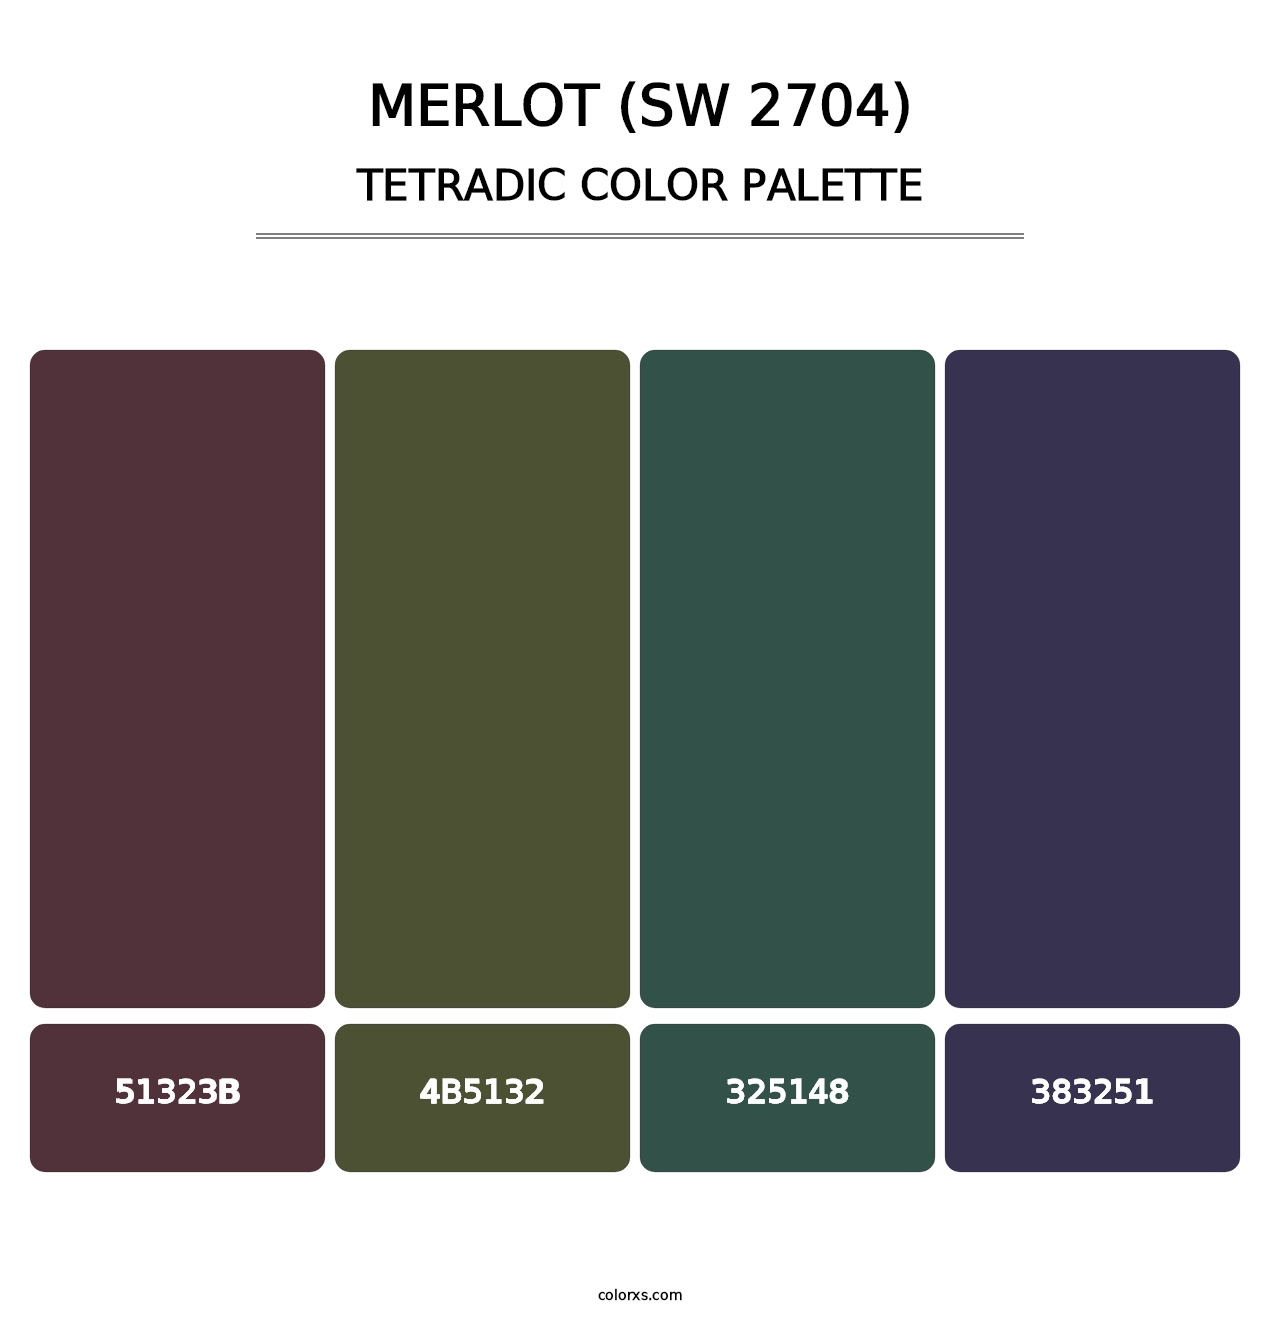 Merlot (SW 2704) - Tetradic Color Palette